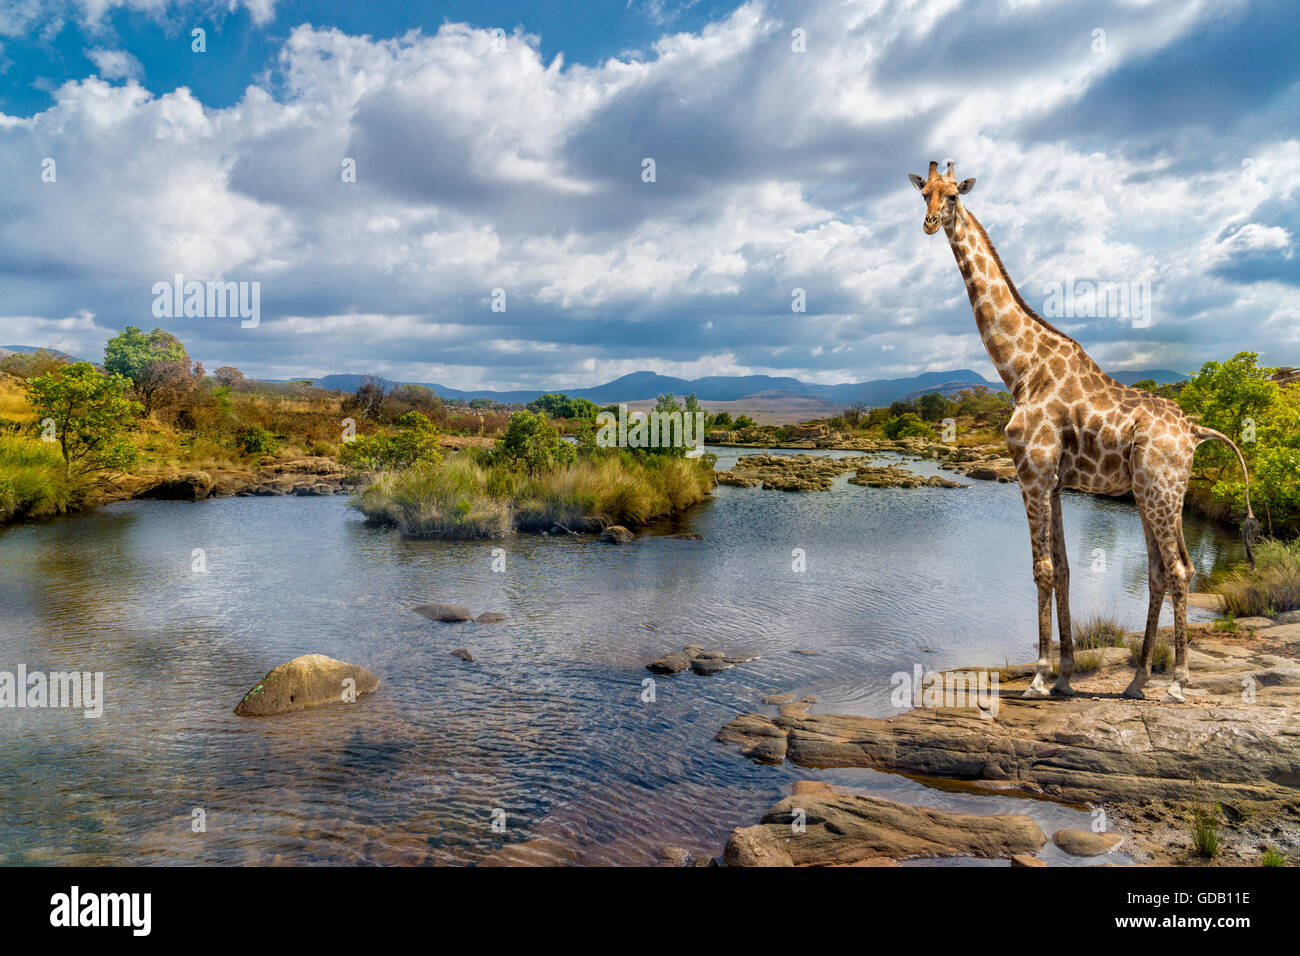 Shot pittoresque d'une girafe, debout sur la rive du fleuve. Banque D'Images